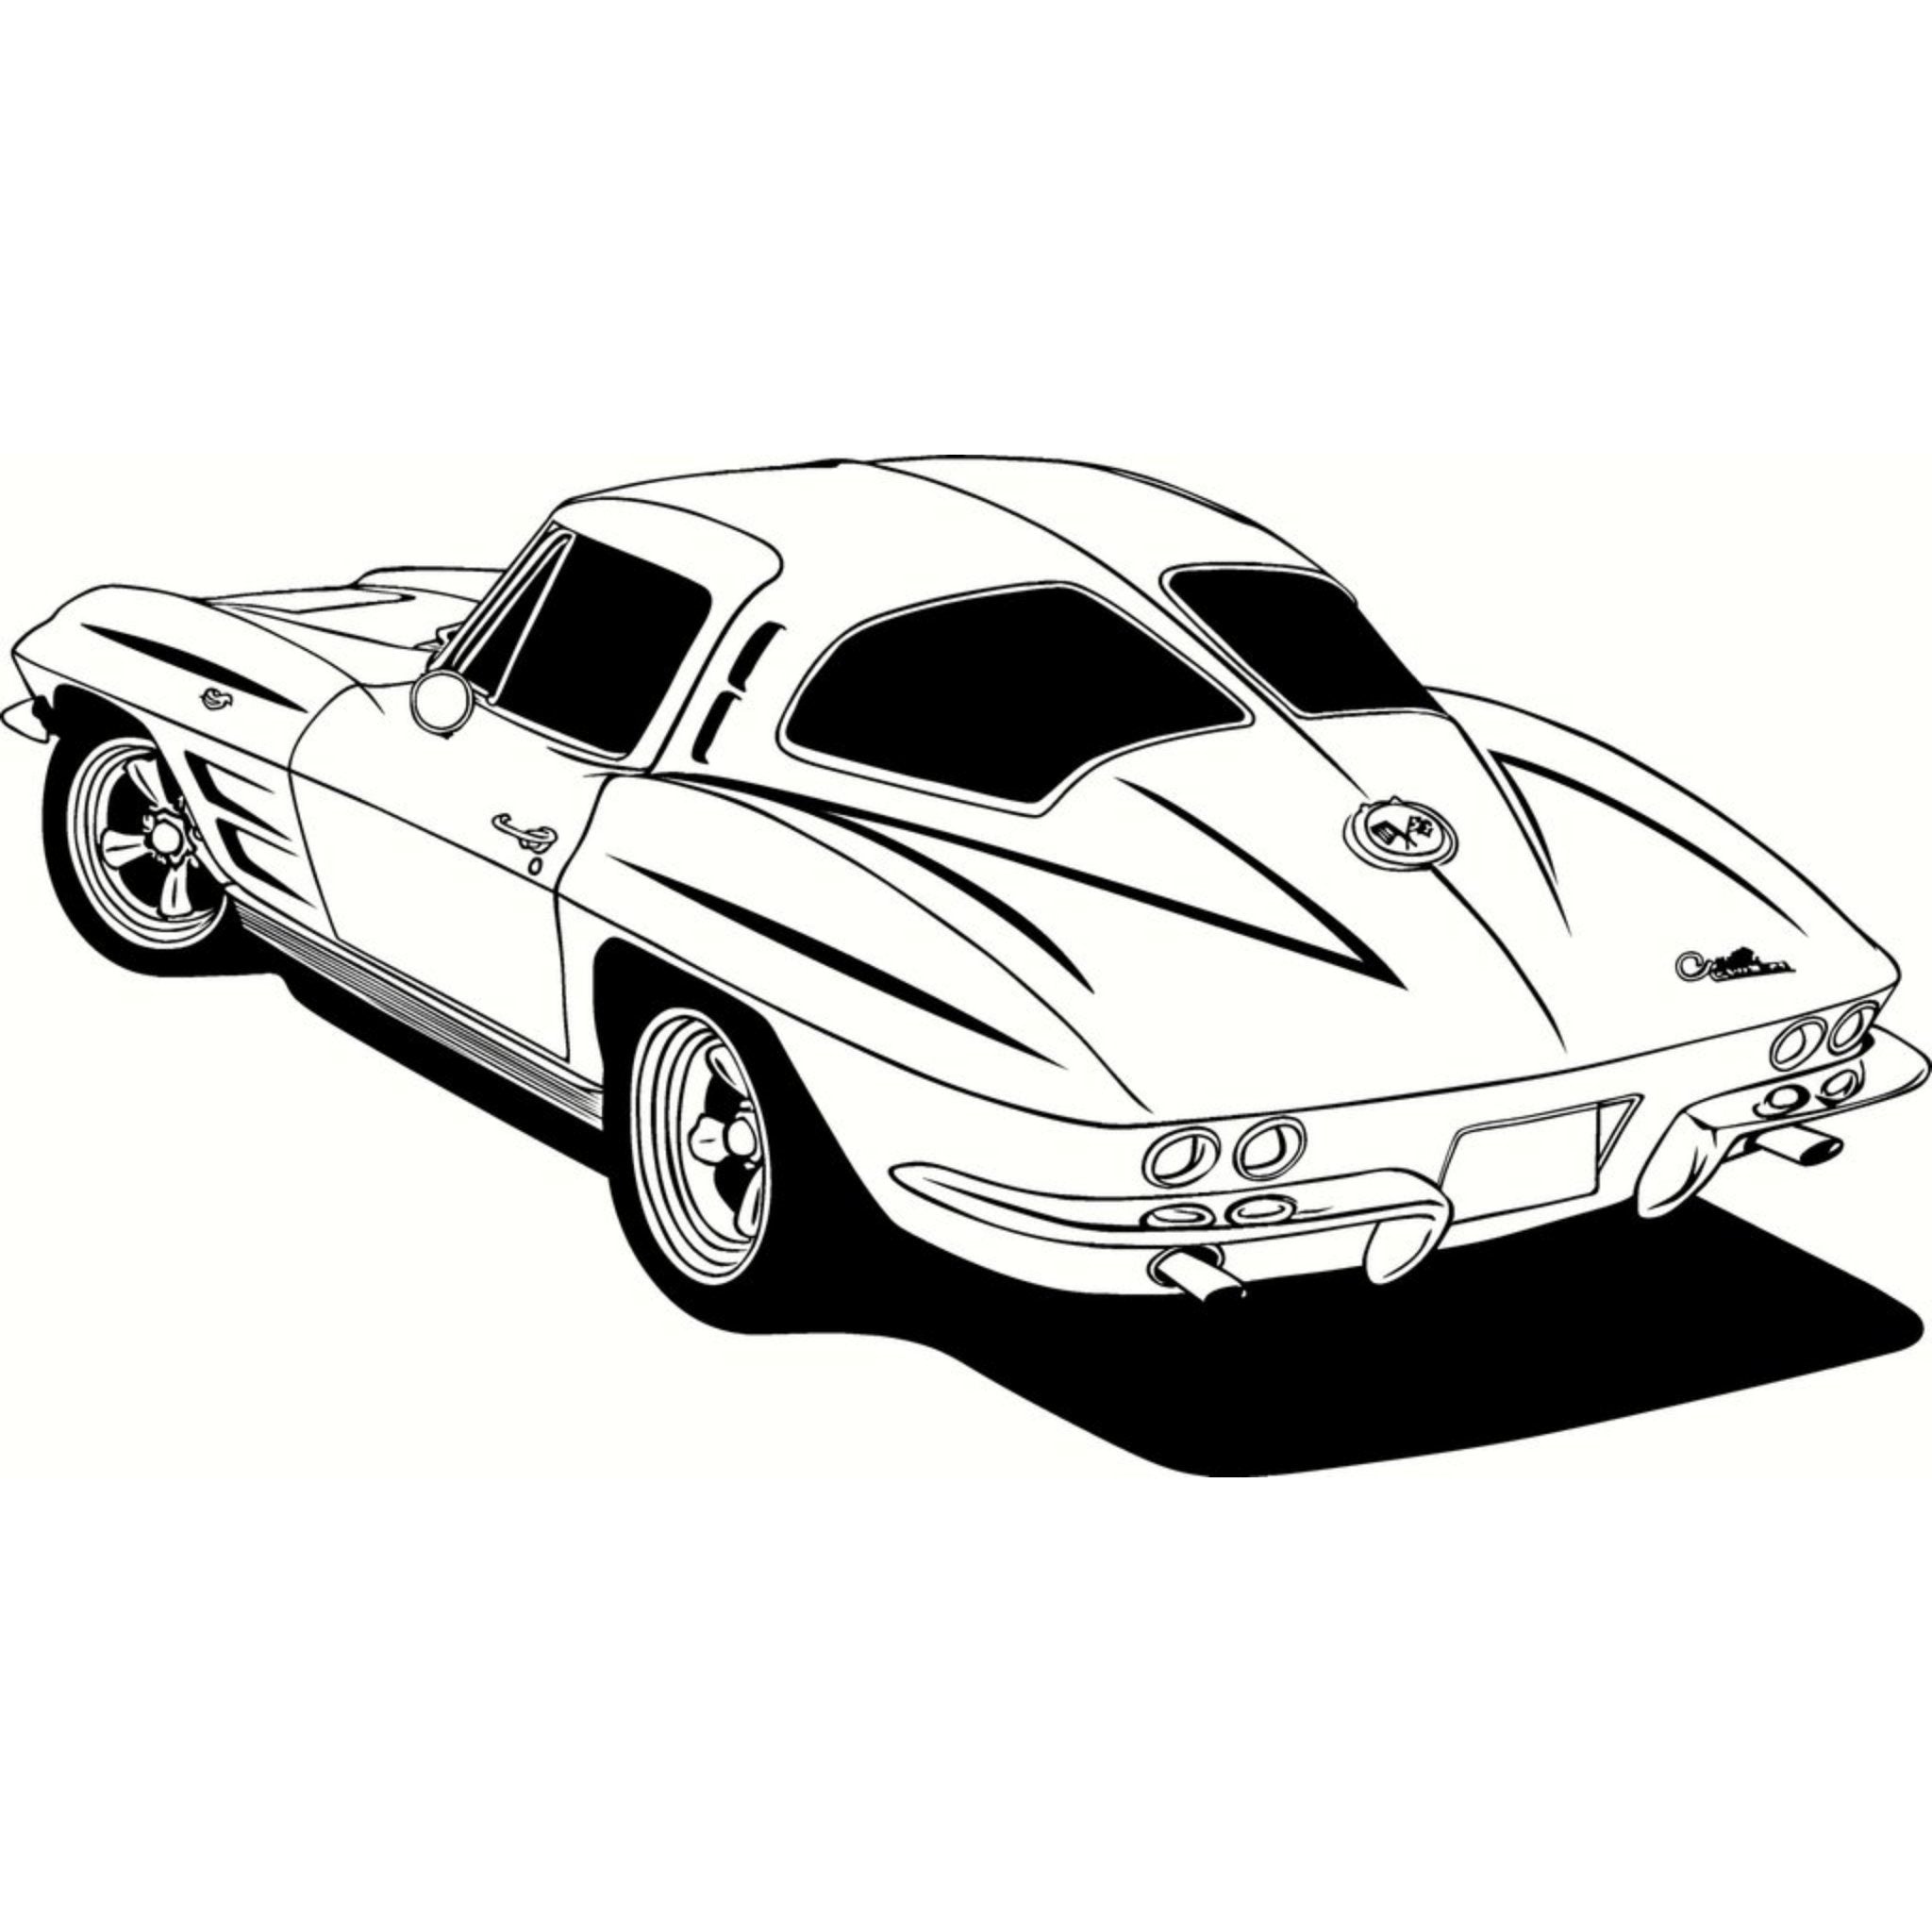 Corvette C3 1963 Split Window Line Graphic Instant Download, Vector, Car, SVG, Cut File, Print, Illustration, Digital, Scrapbooking, Cameo, Cricut - Vette1 - C3 Downloads